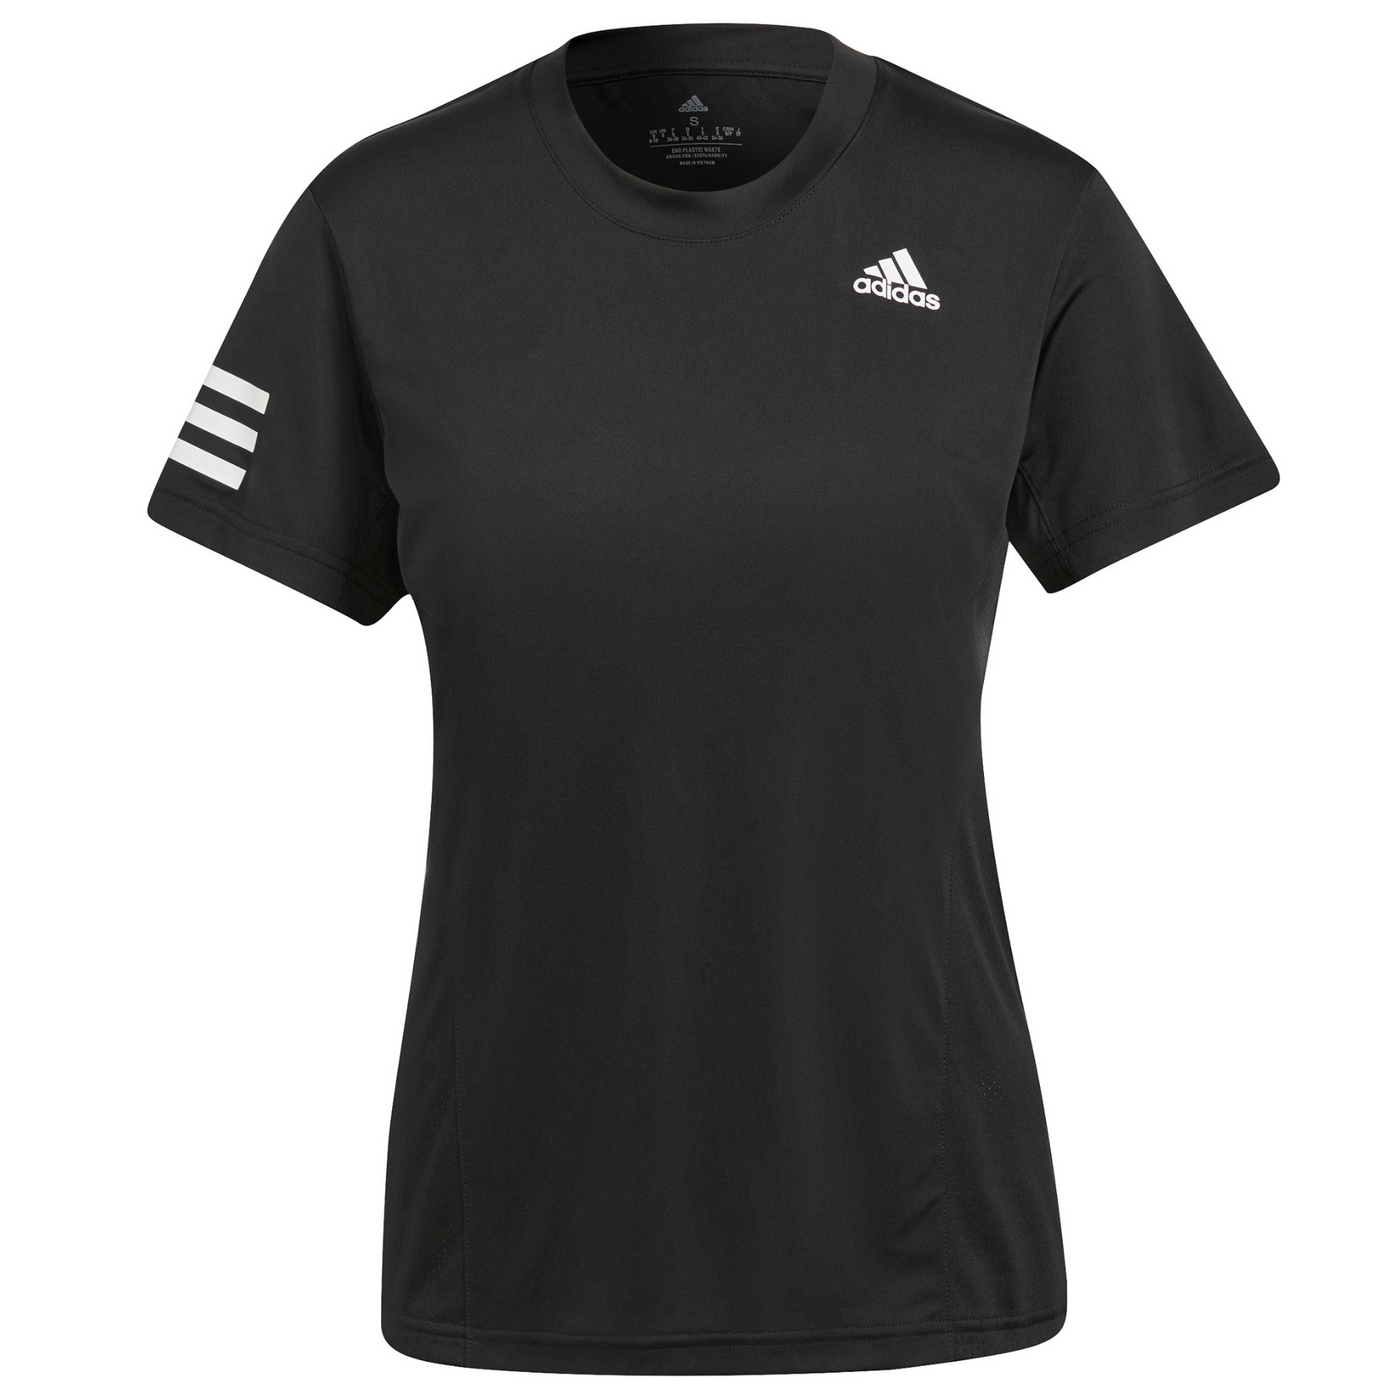 Adidas Club Tee Tennis T-Shirt - Black/White